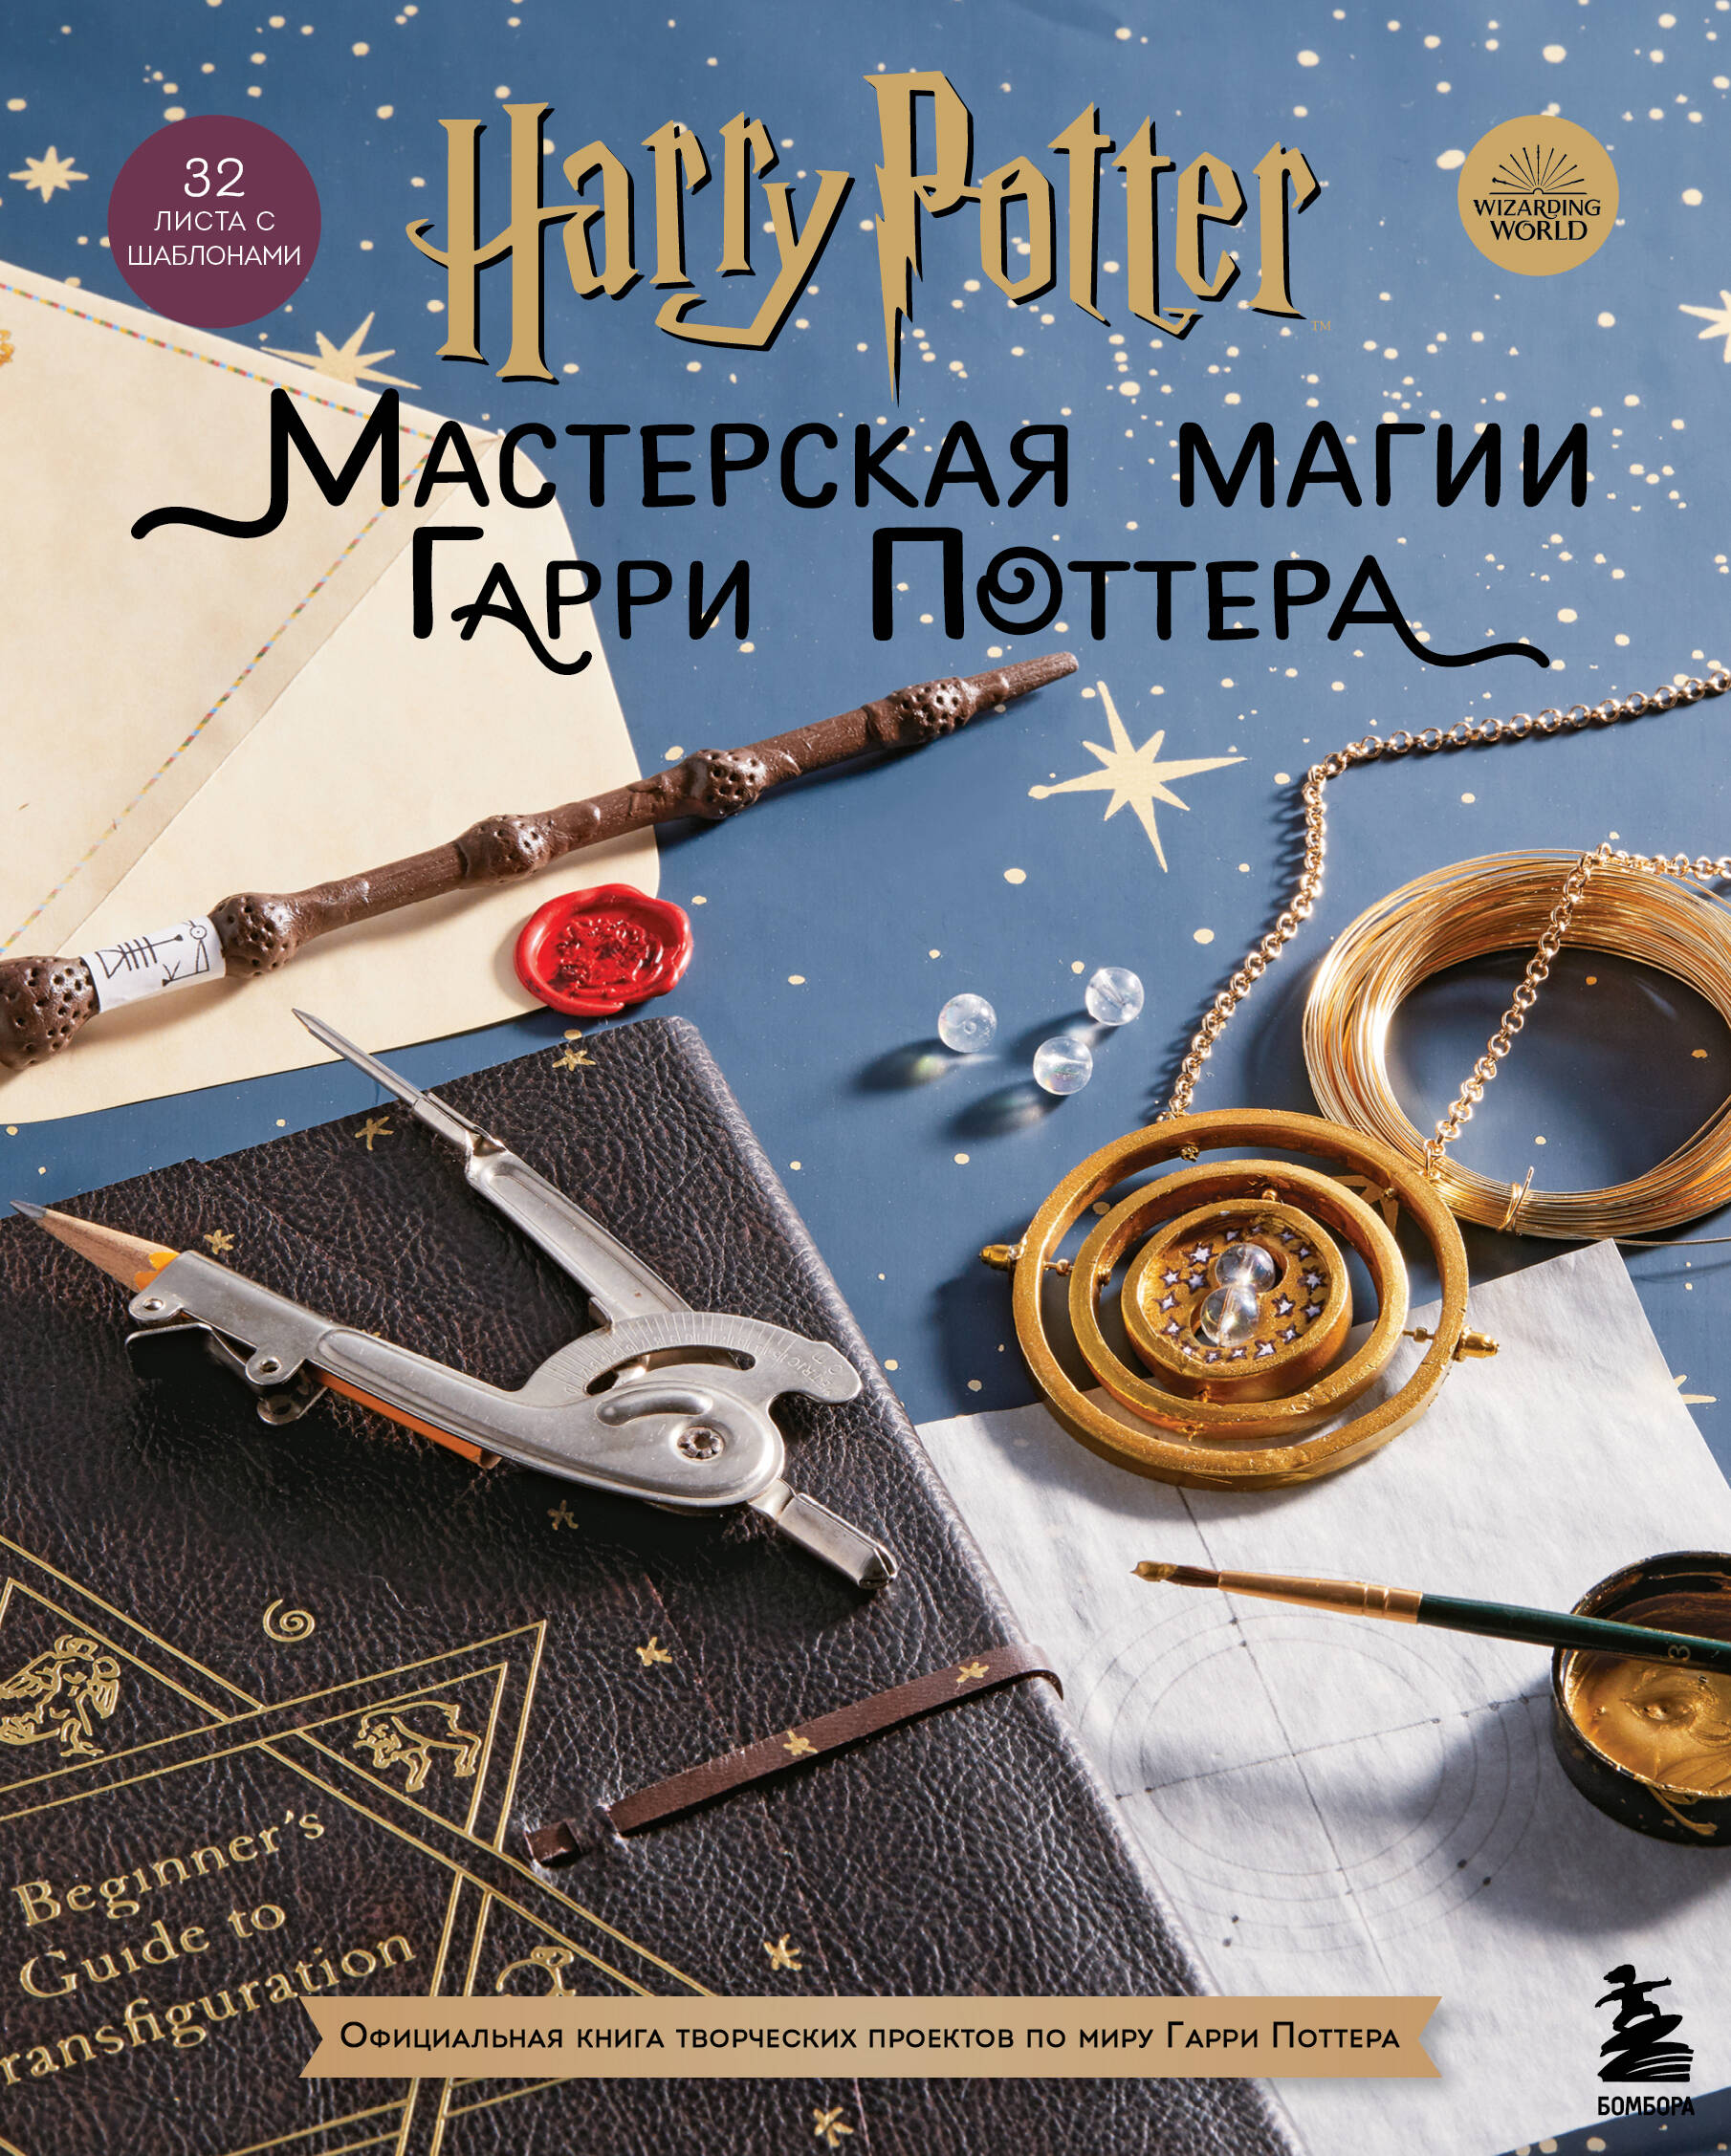 harry potter мастерская магии гарри поттера официальная книга творческих проектов по миру гарри поттера Harry Potter. Мастерская магии Гарри Поттера. Официальная книга творческих проектов по миру Гарри Поттера